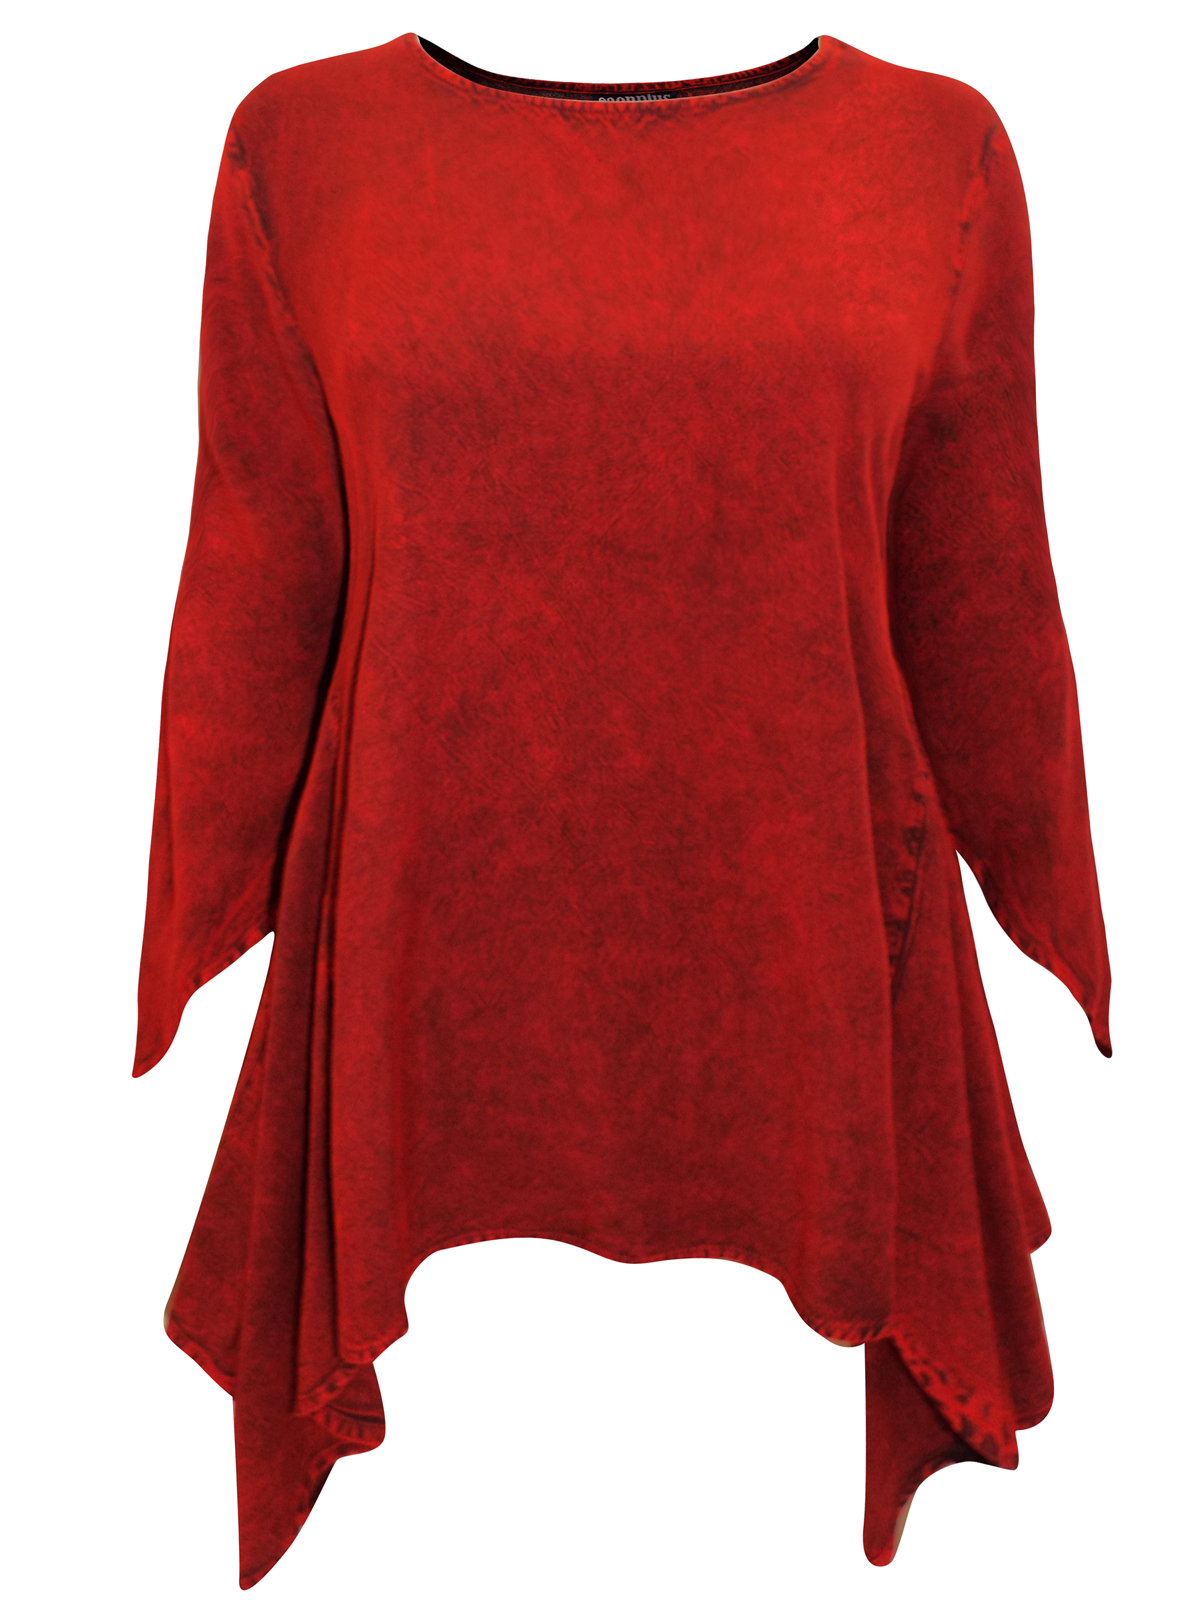 eaonplus RED Acid Wash Mythical Ways Pixie Sleeve Tunic - Plus Size 18/ ...